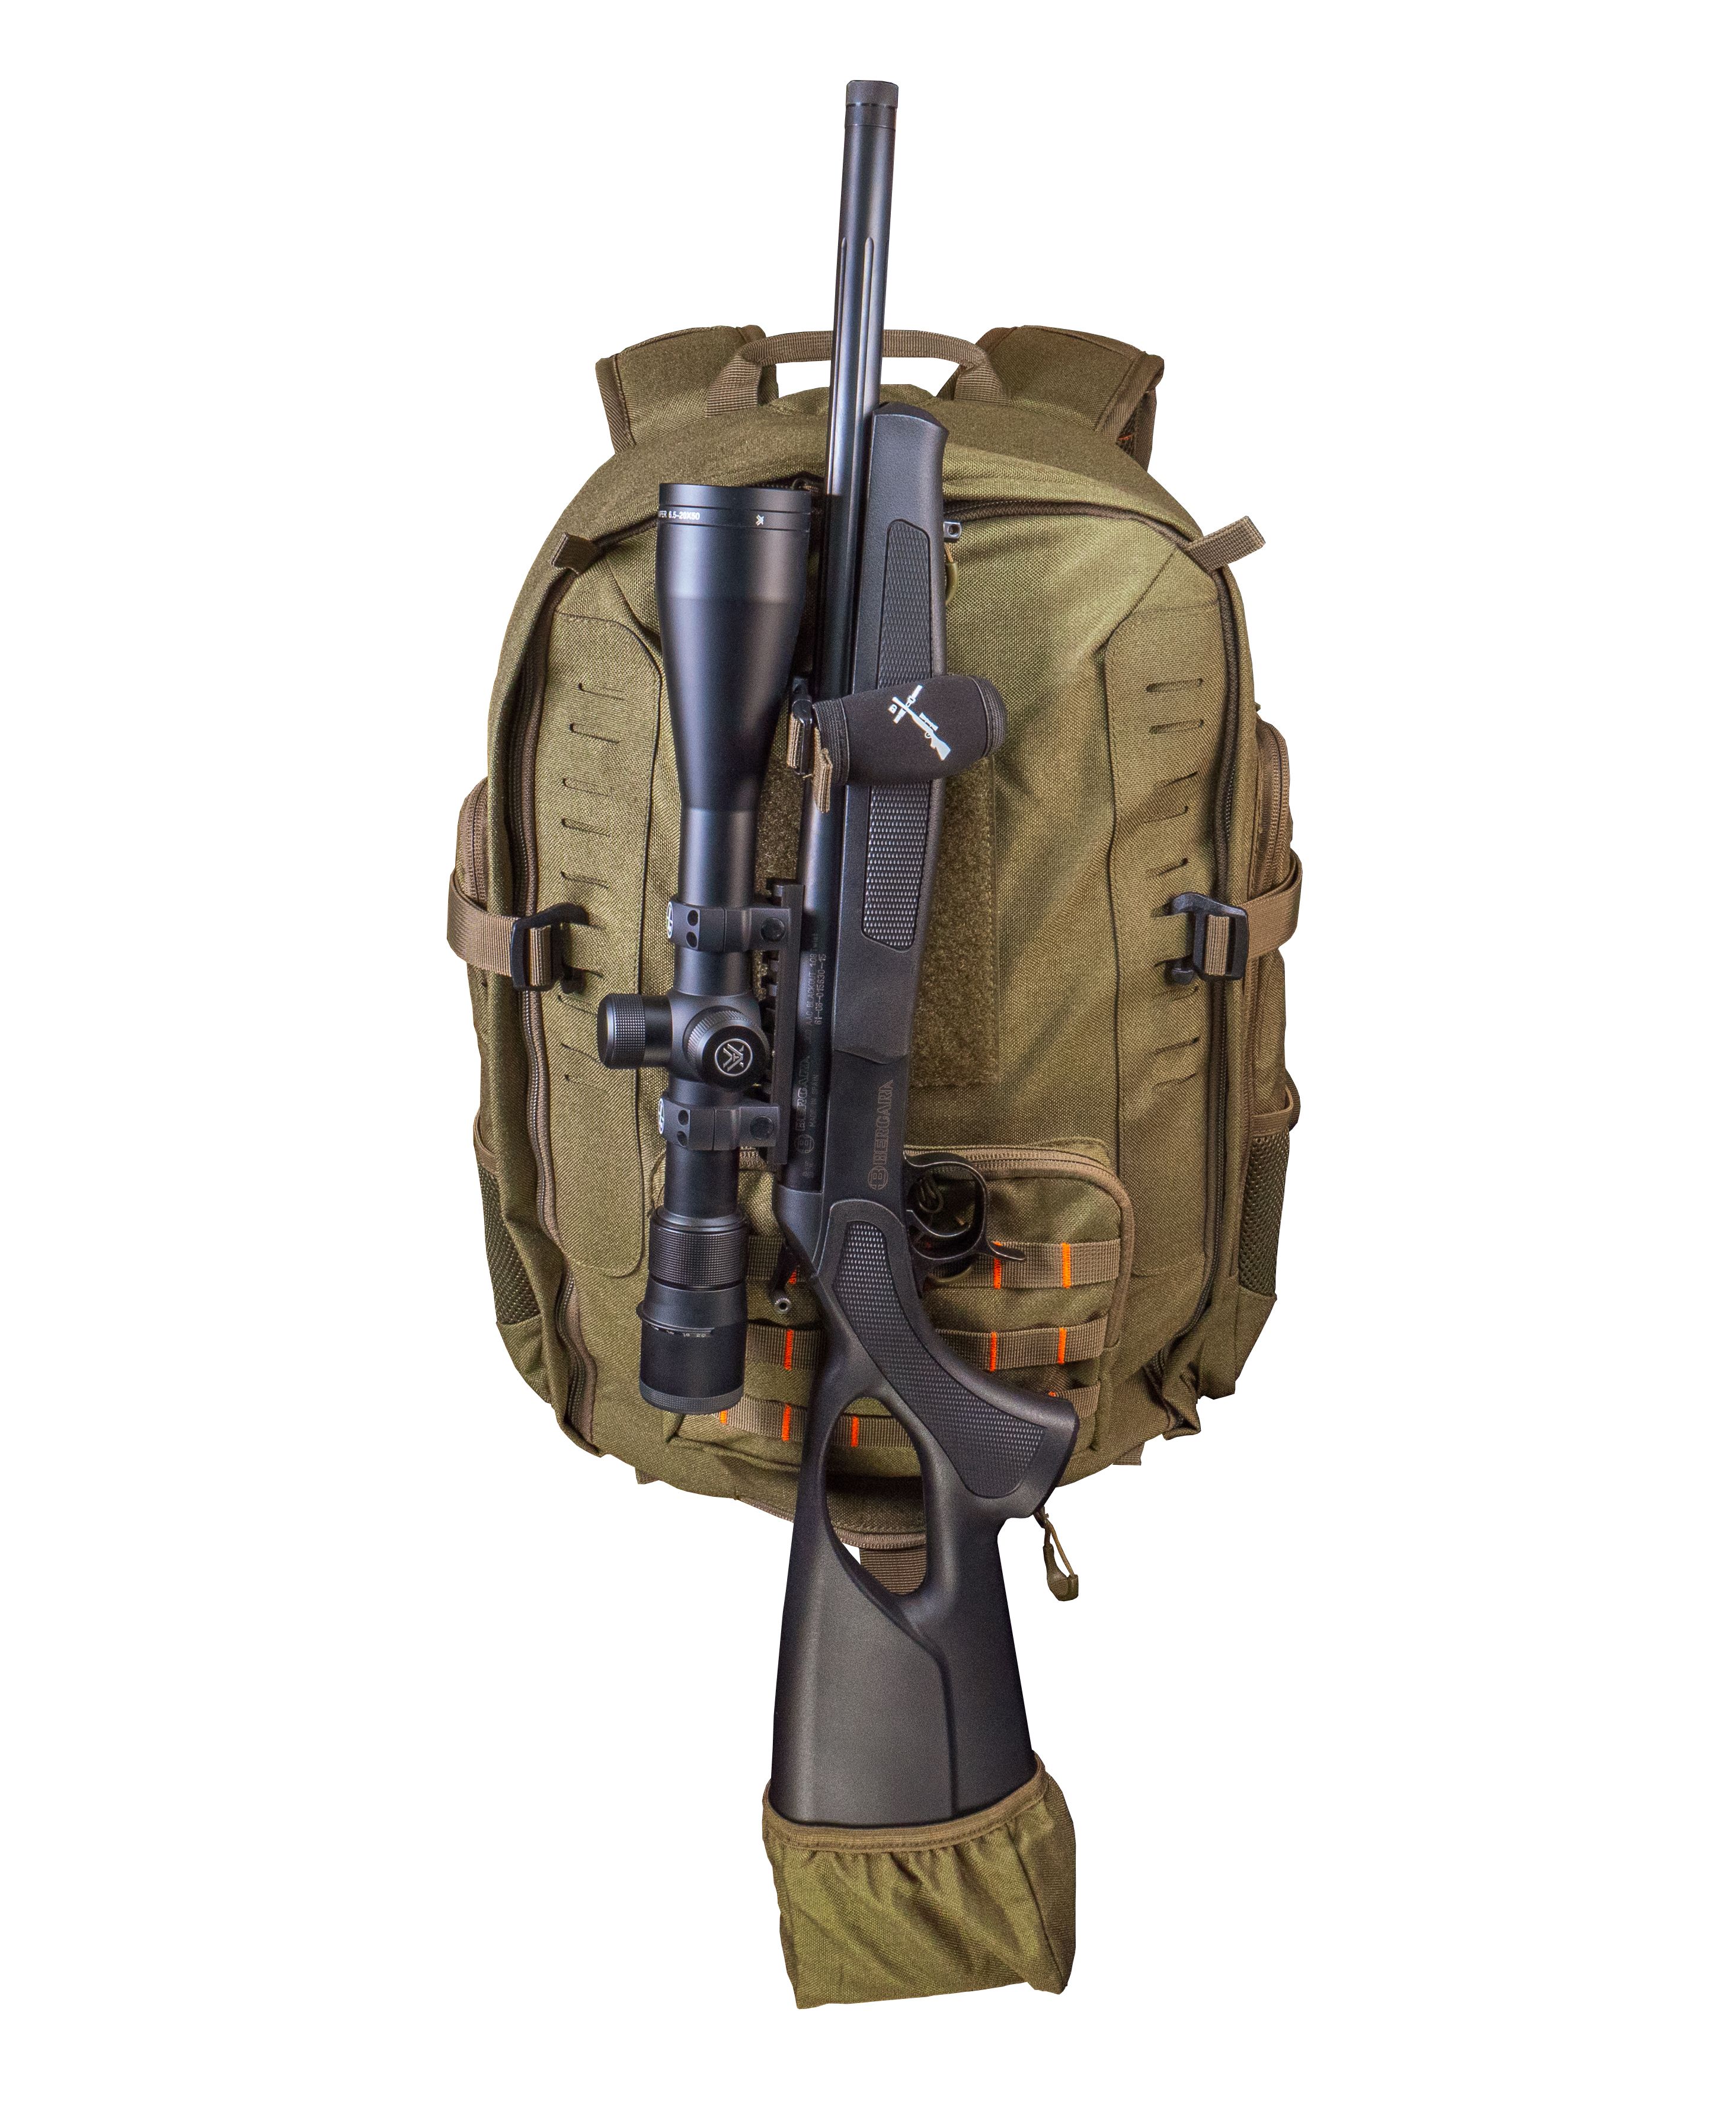 DAYPACK 35L backpack